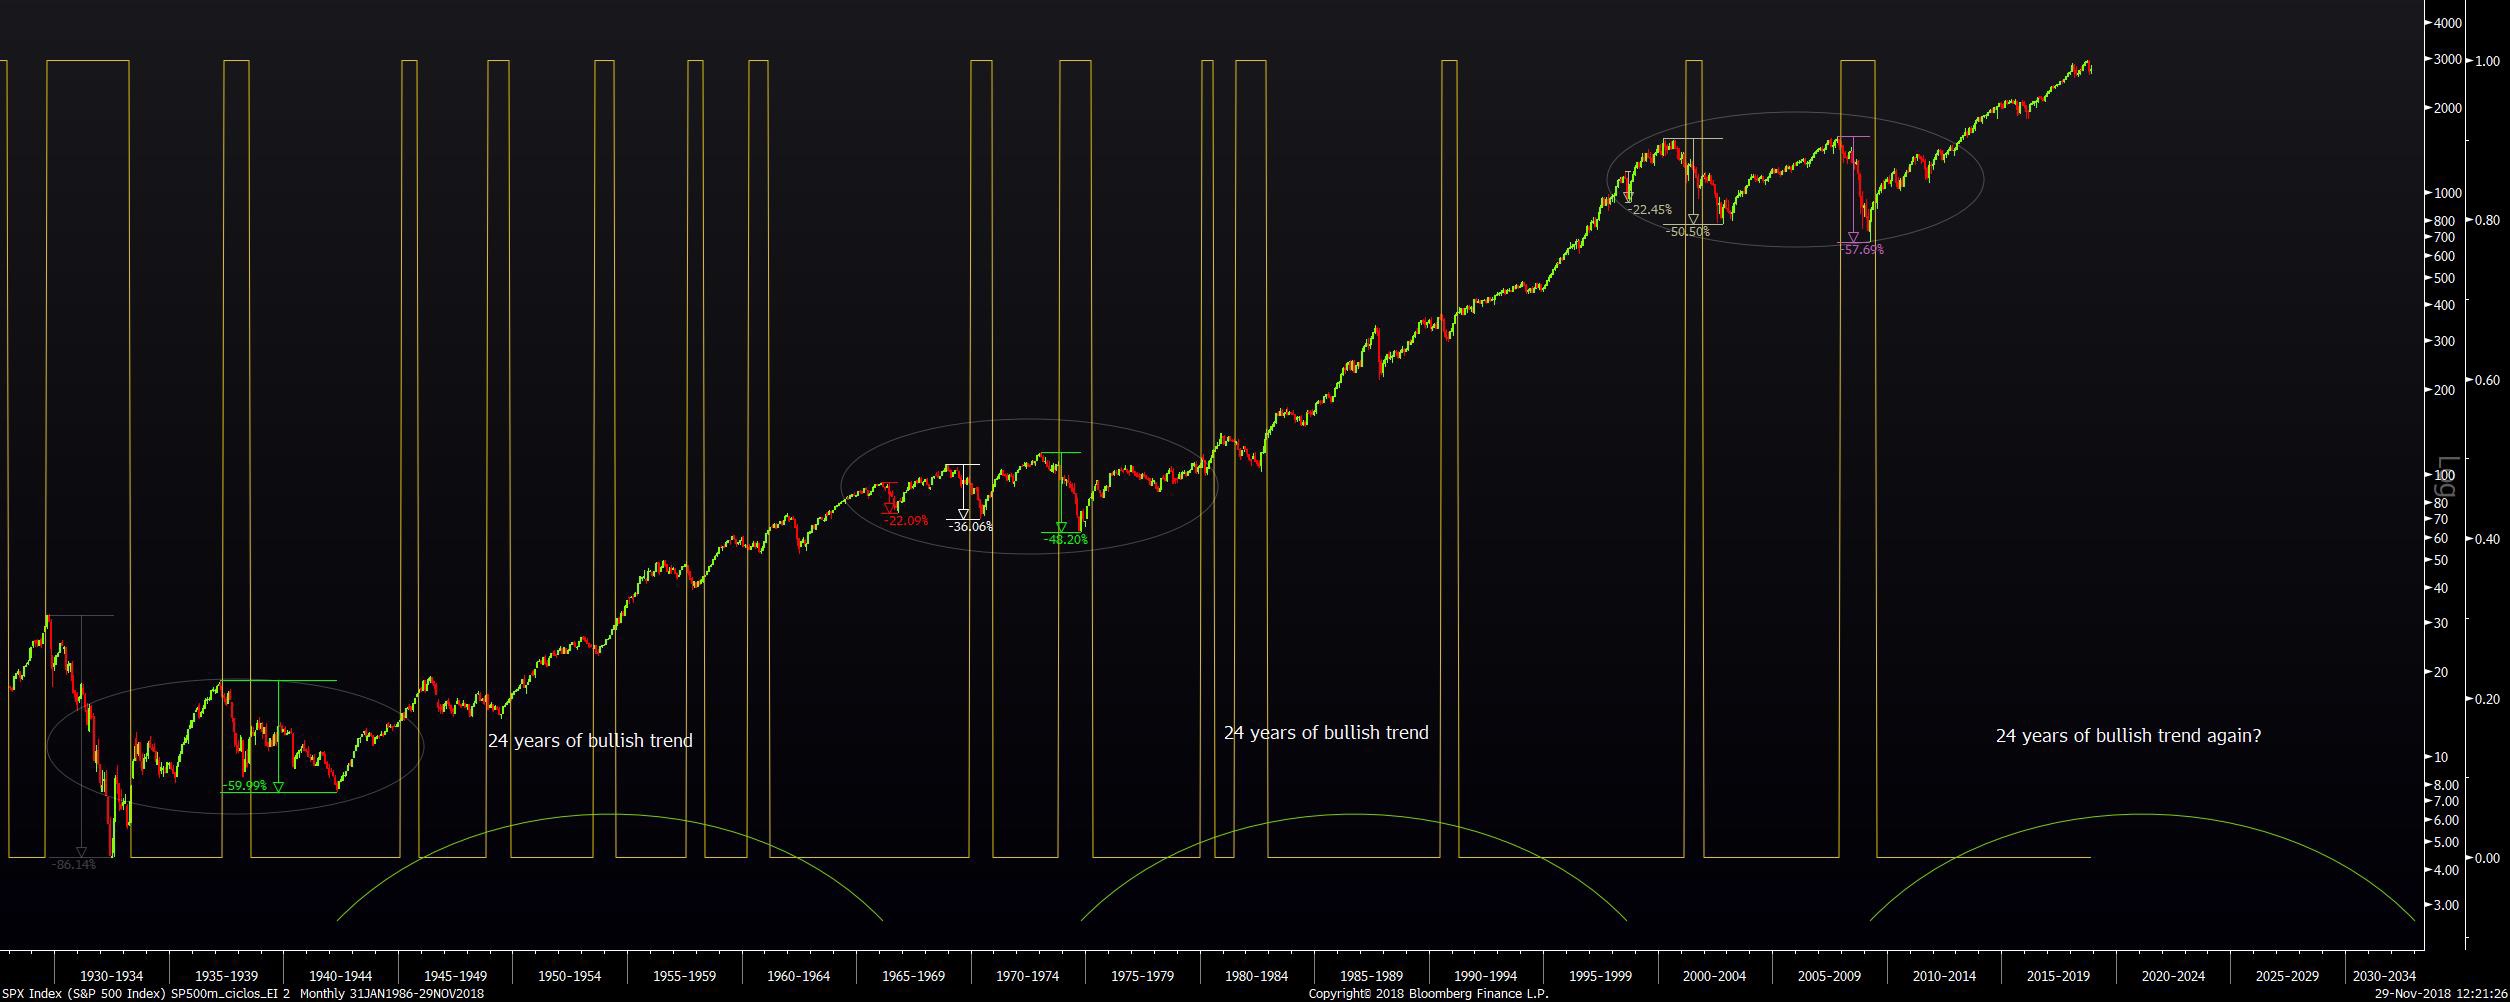 Análisis histórico del S&P 500. Fases de recesión